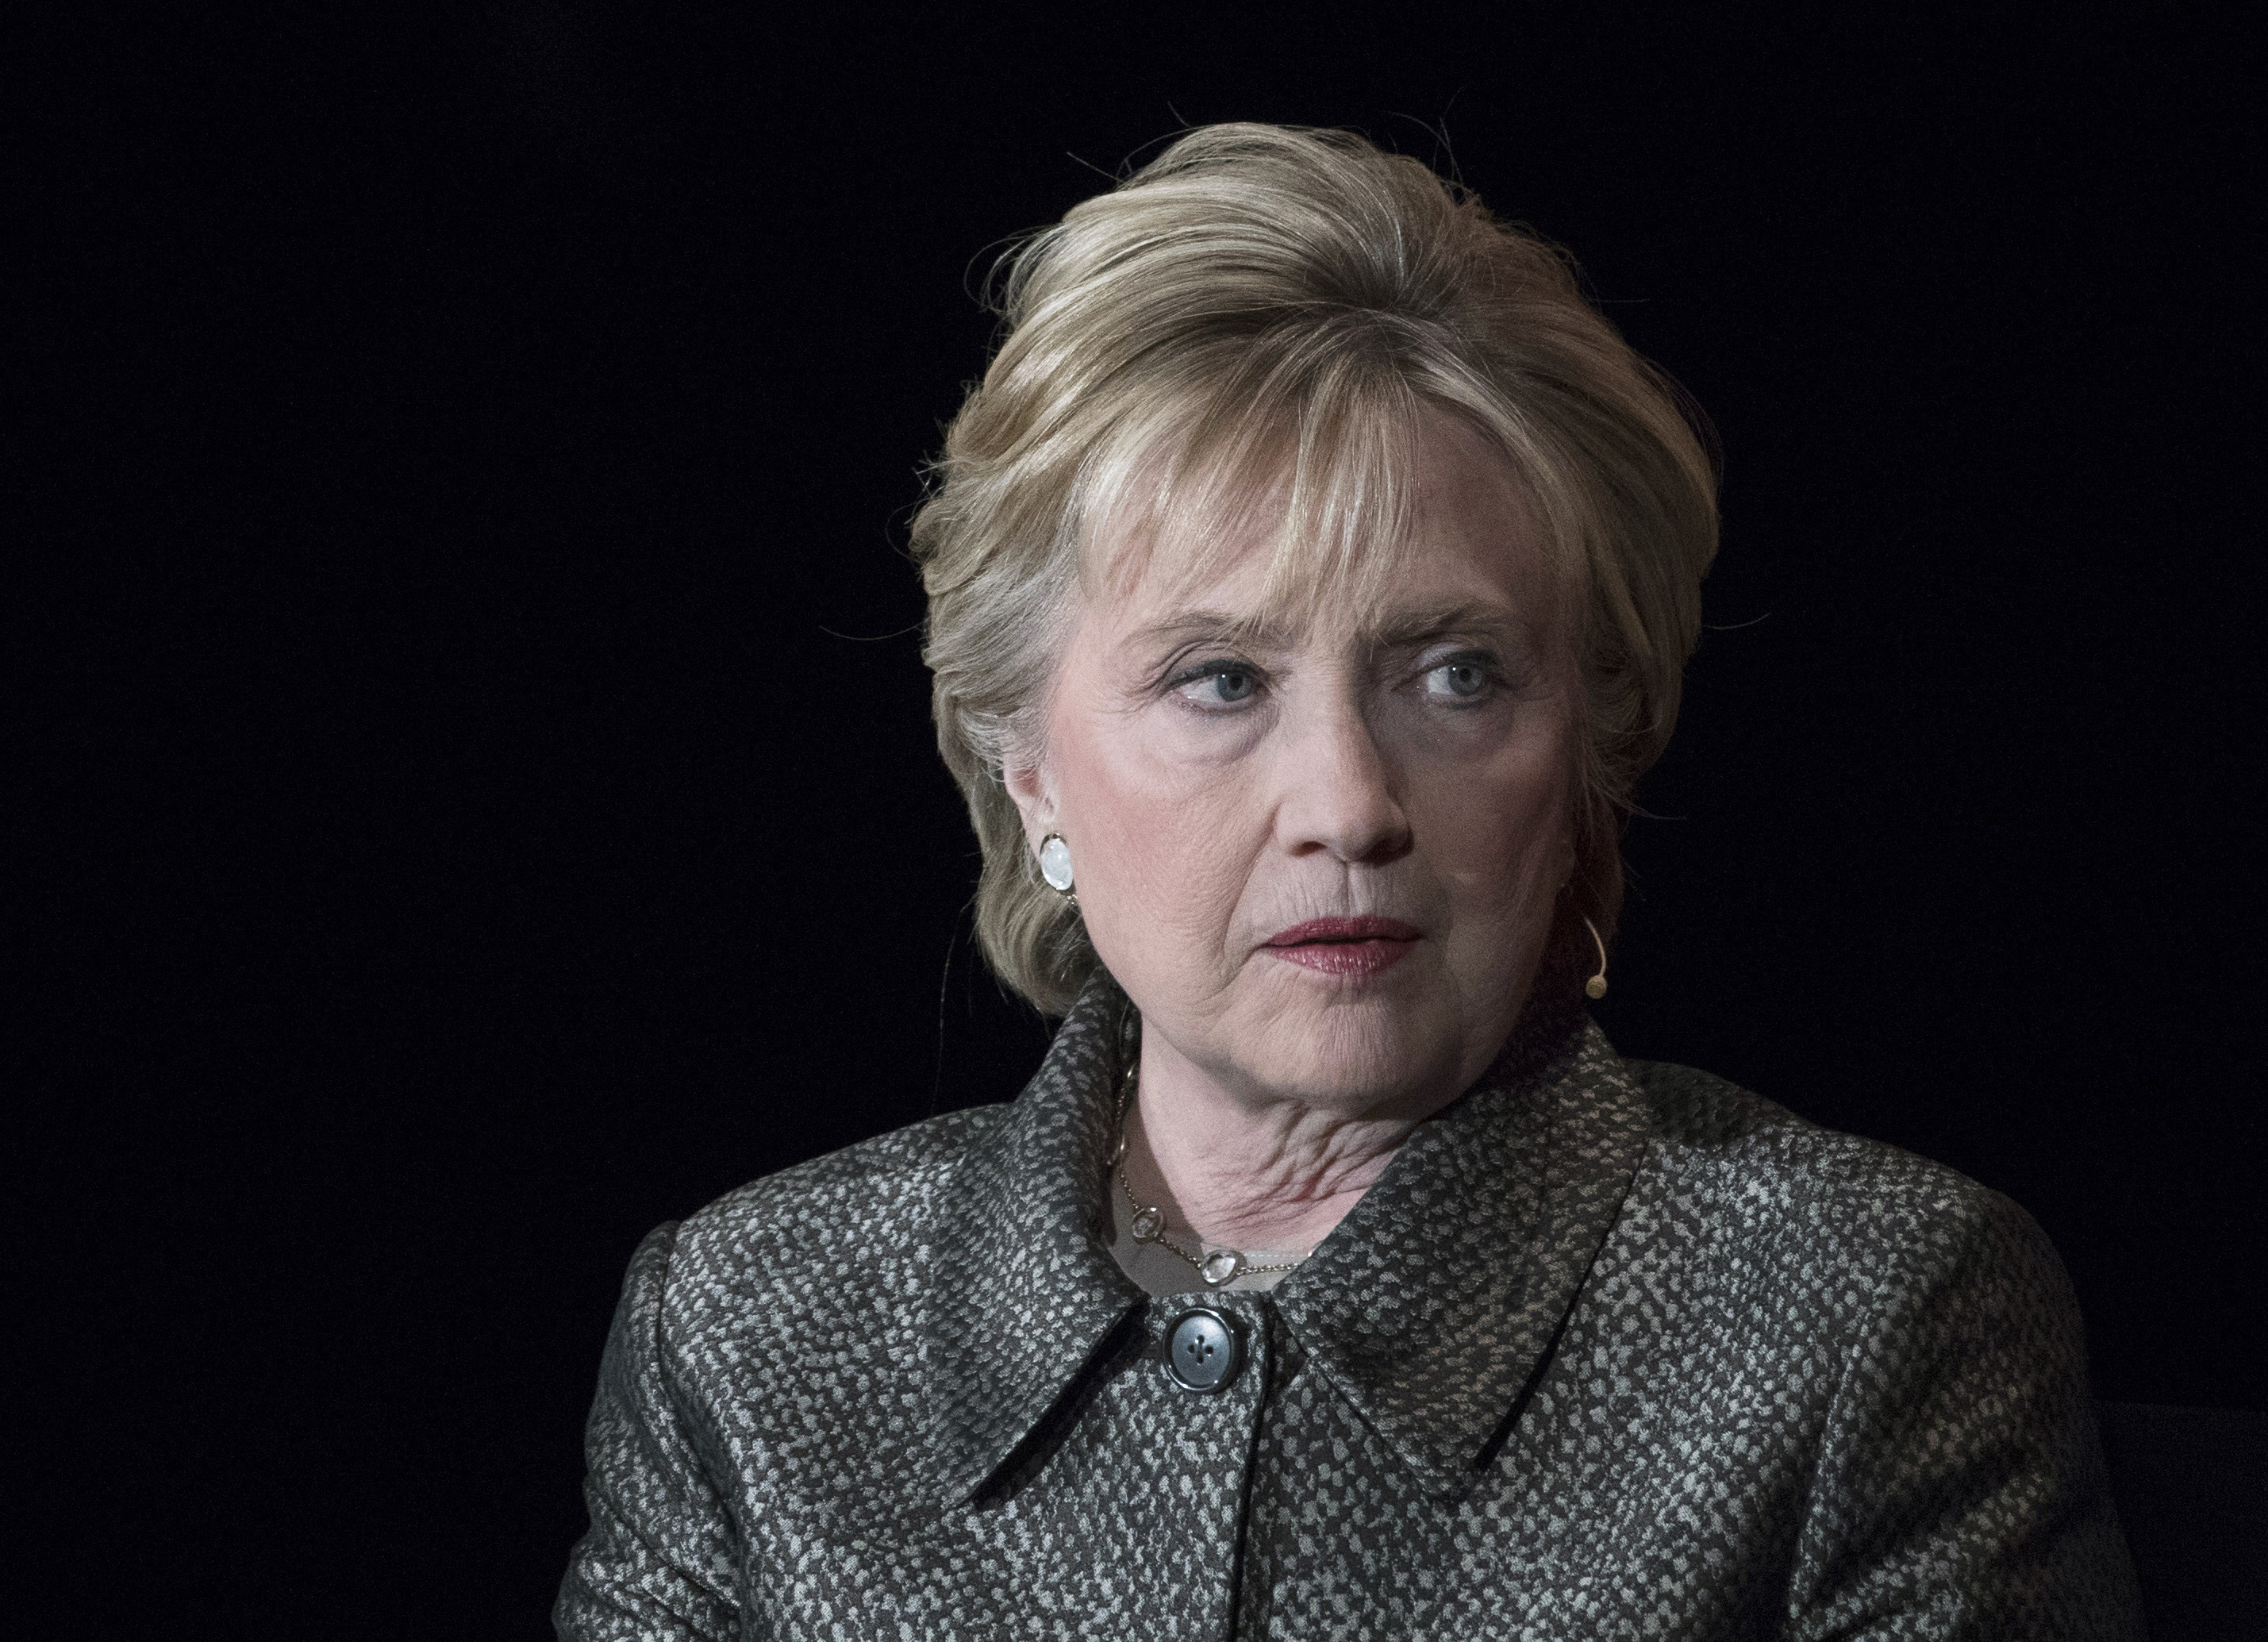 Hillary Clinton se negó a despedir a asesor acusado de acoso sexual: NYT